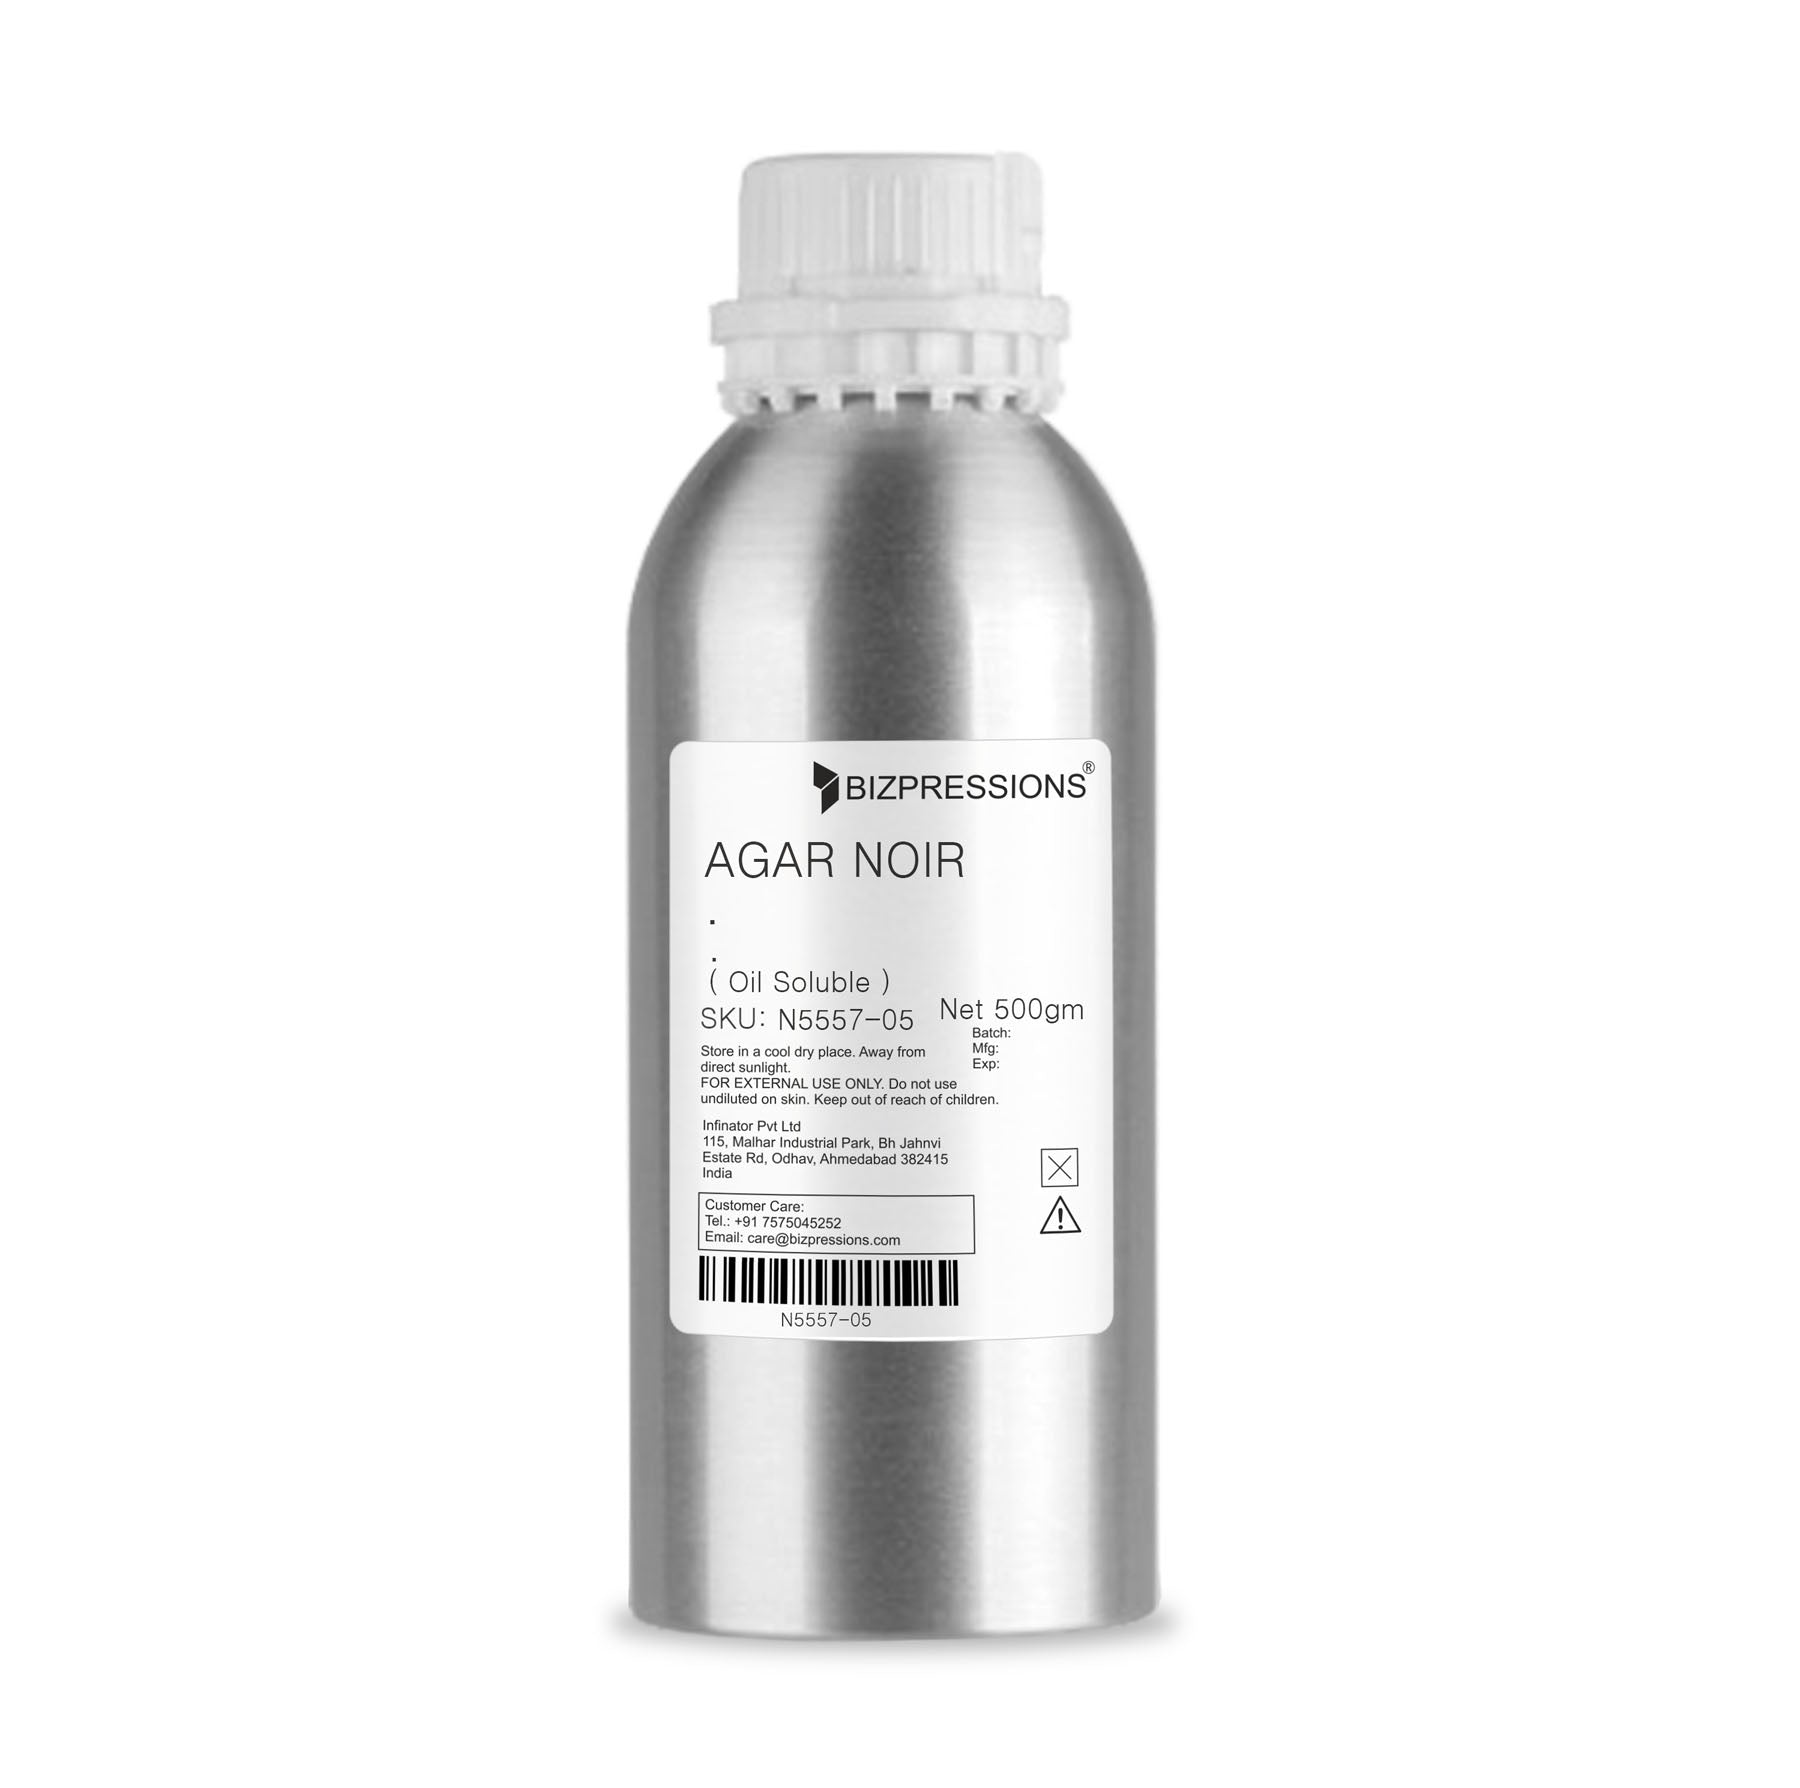 AGAR NOIR - Fragrance ( Oil Soluble ) - 500 gm